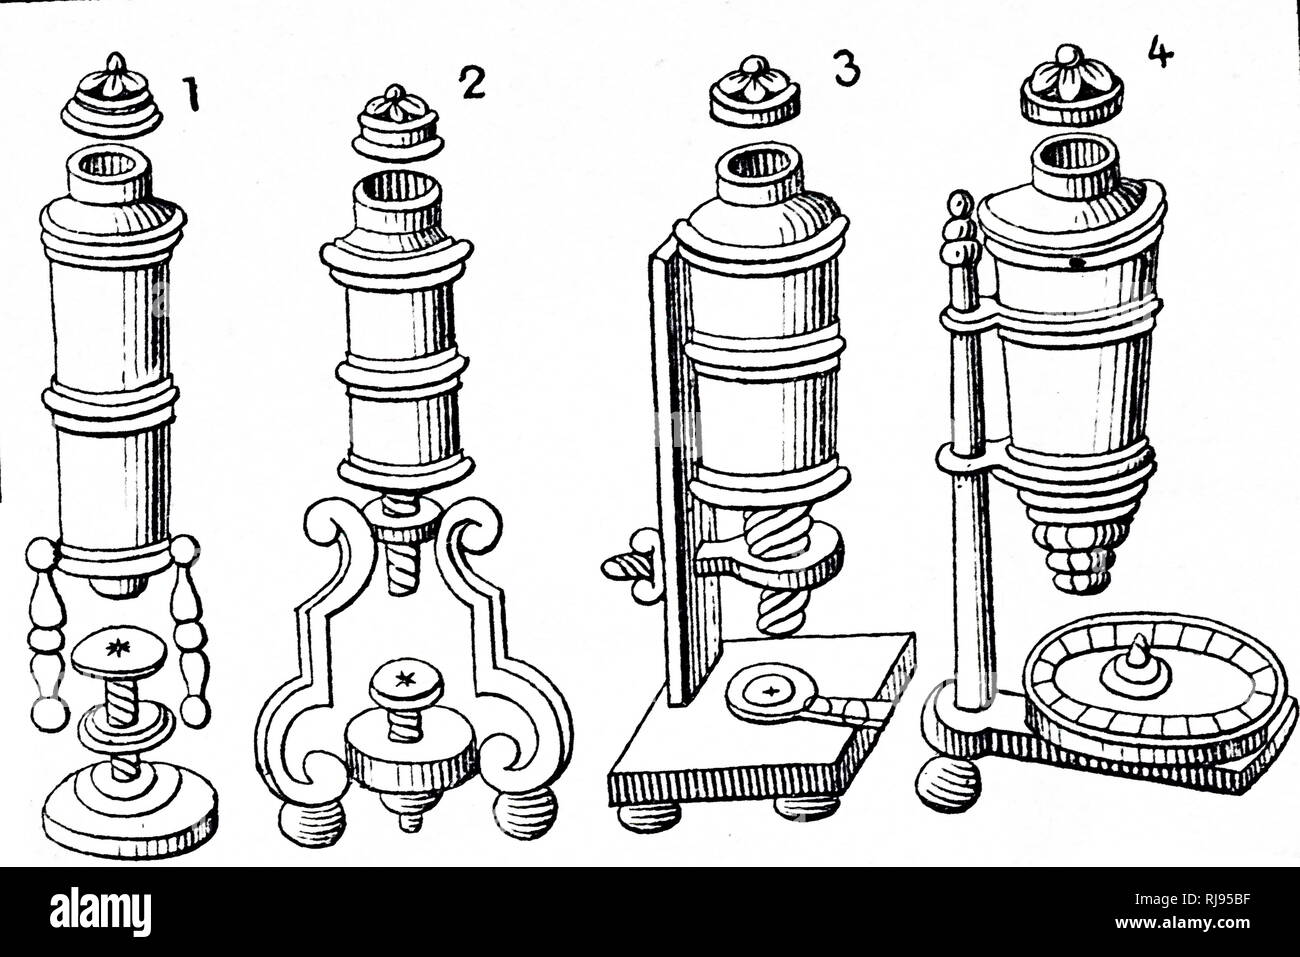 Ein holzschnitt Kupferstich, Balthazar de Monconys" Mikroskop. Balthazar de Monconys (1611-1665), ein französischer Reisender, Diplomat, Physiker und Magistrat. Vom 17. Jahrhundert Stockfoto